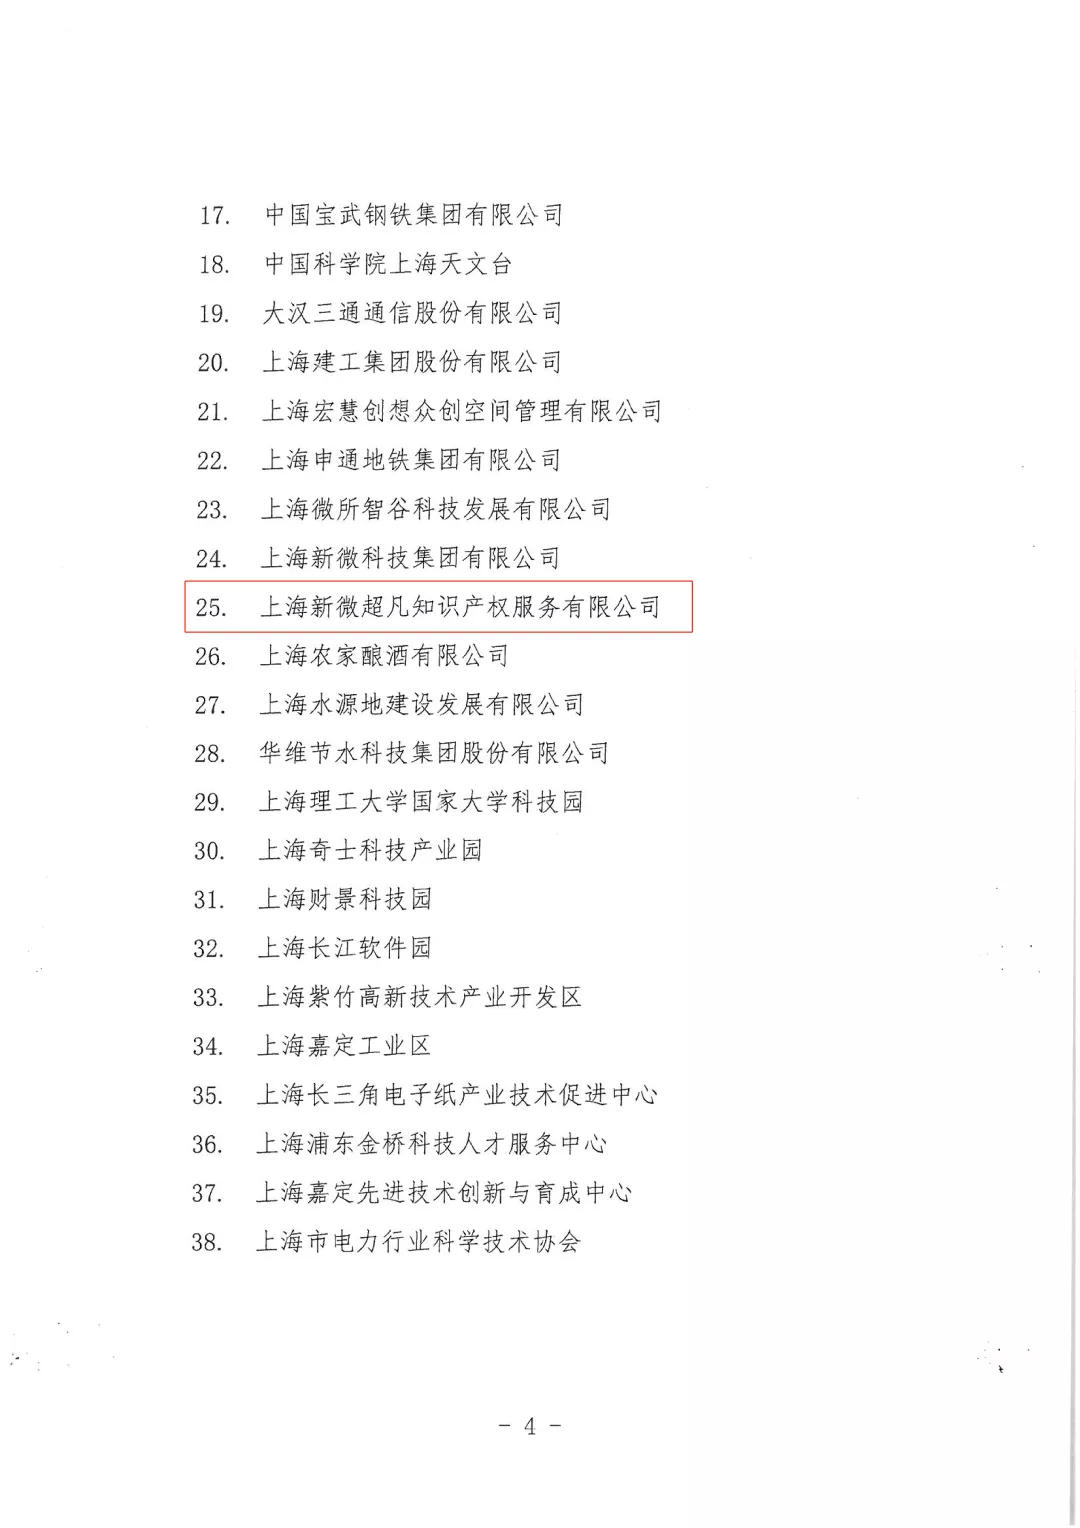 上海市科协助力科协系列活动优秀组织单位04.jpg